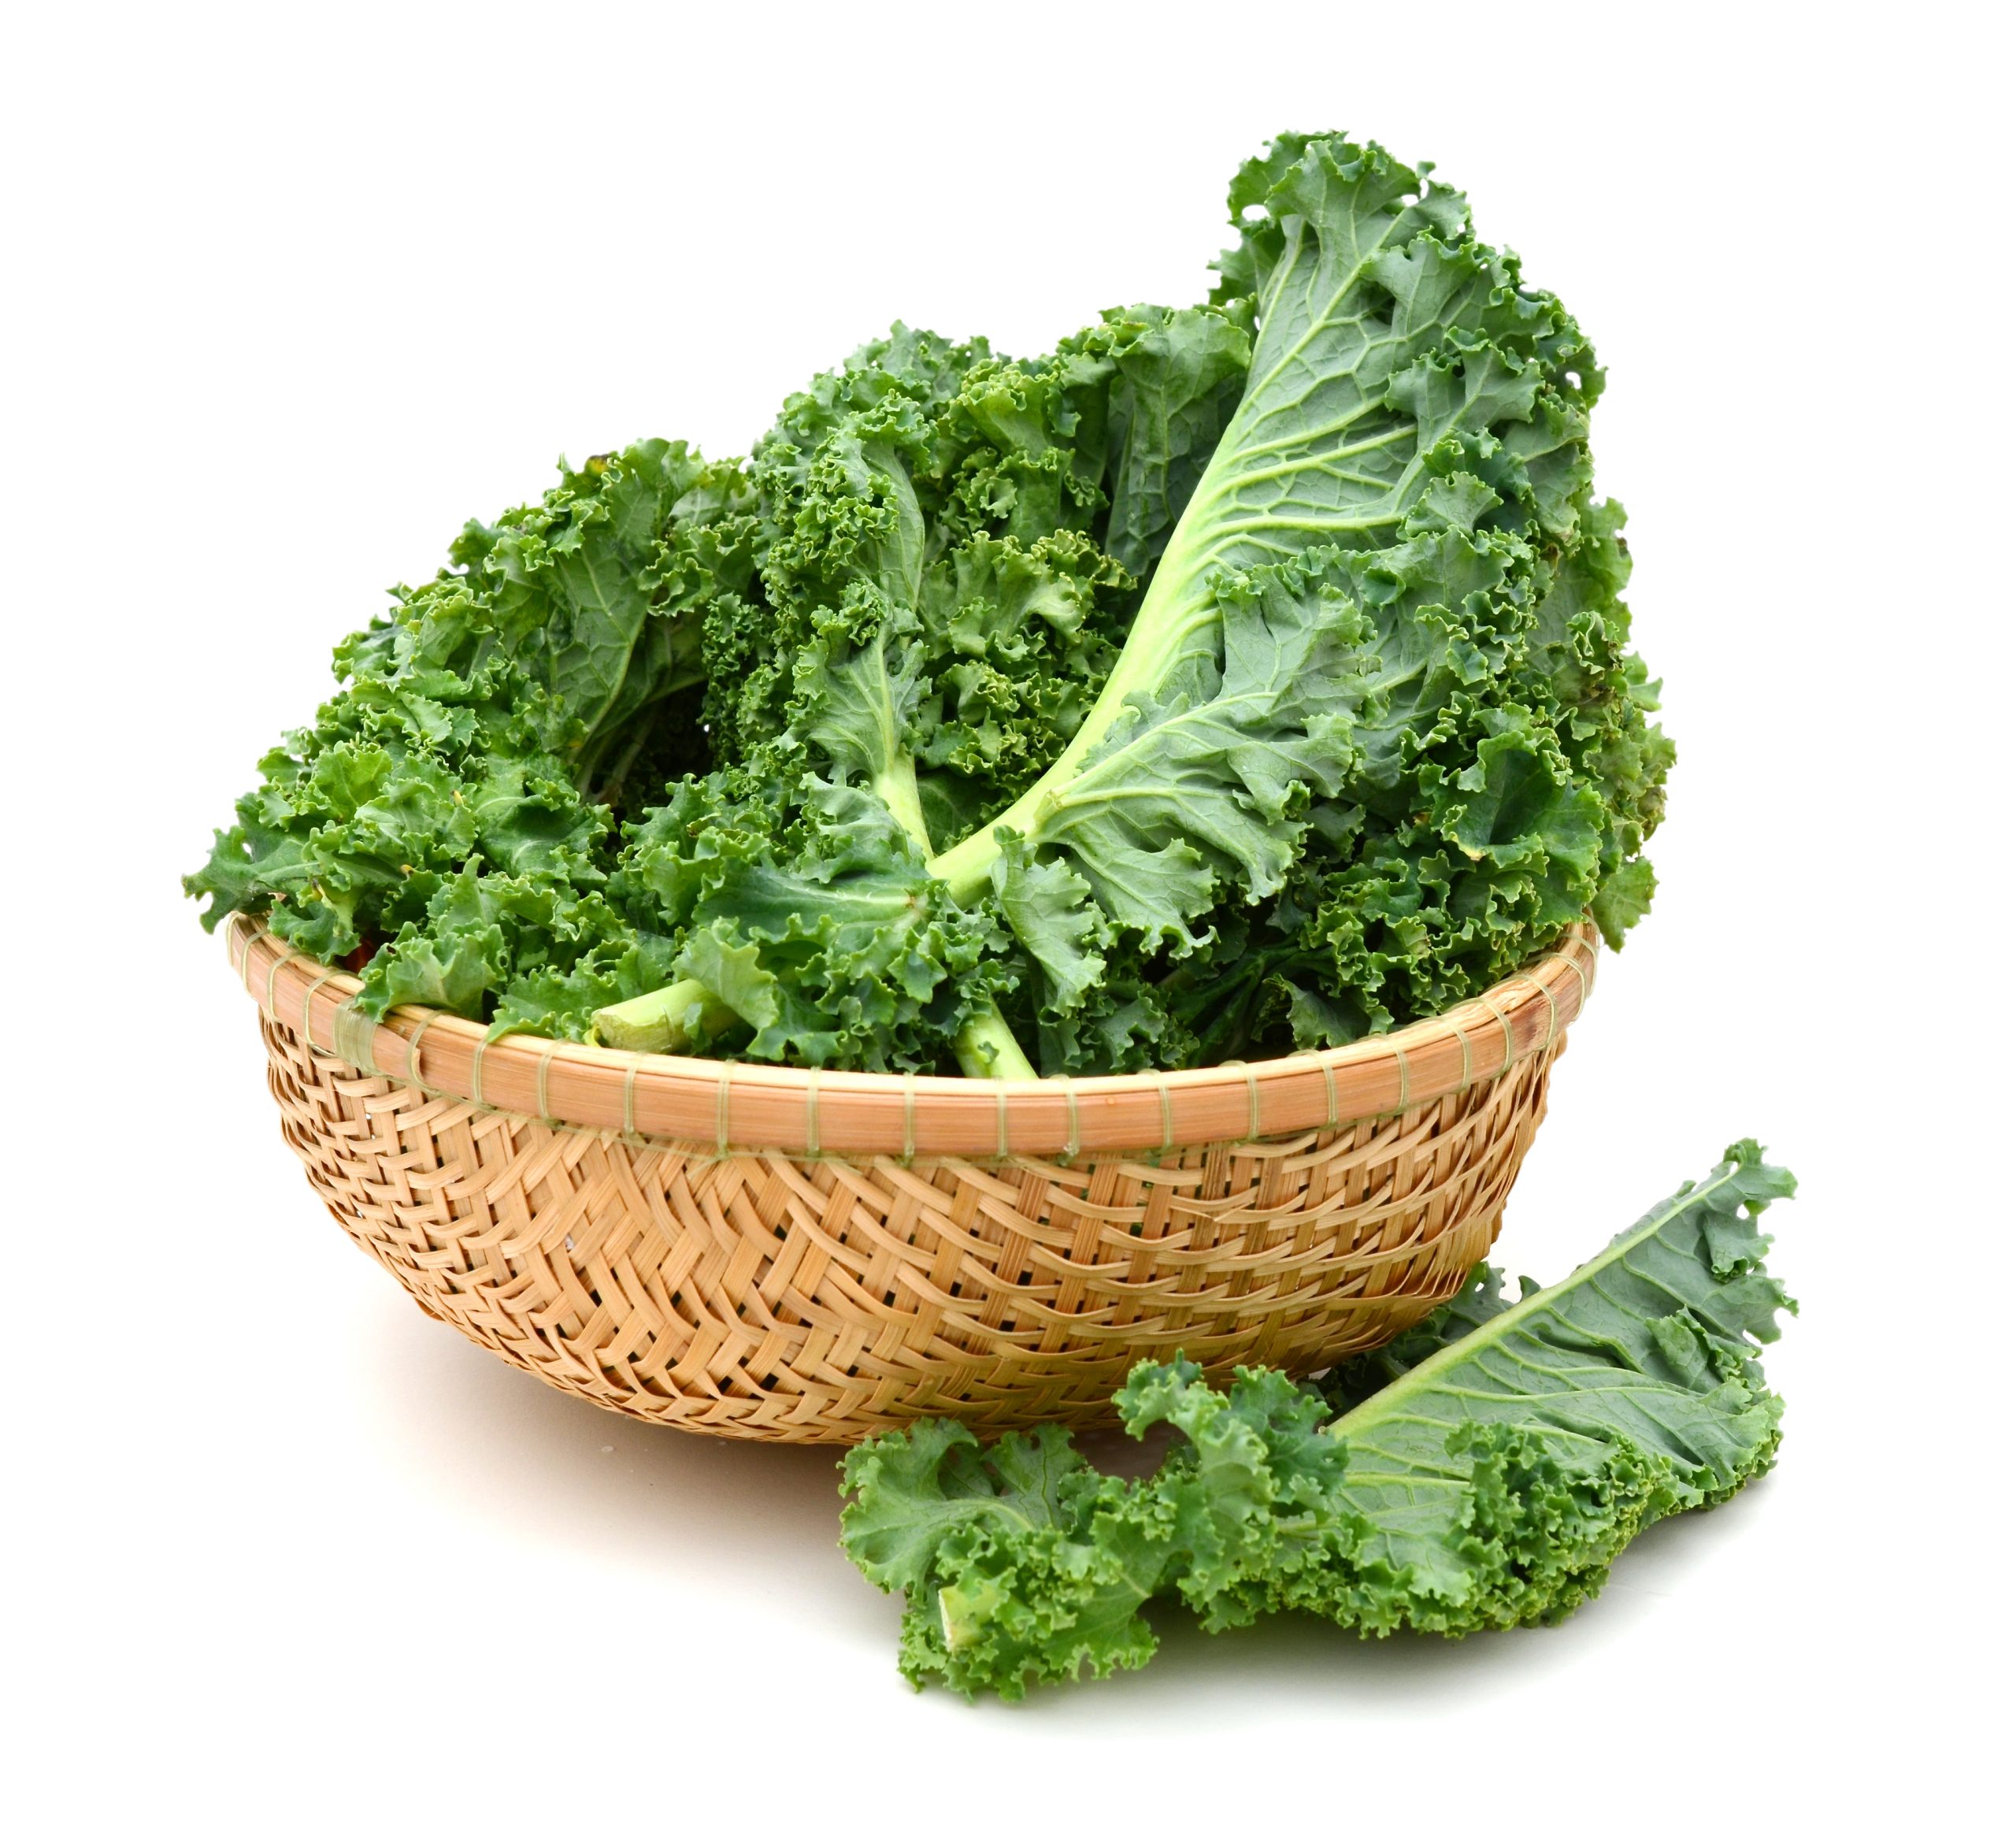 Basket of fresh kale